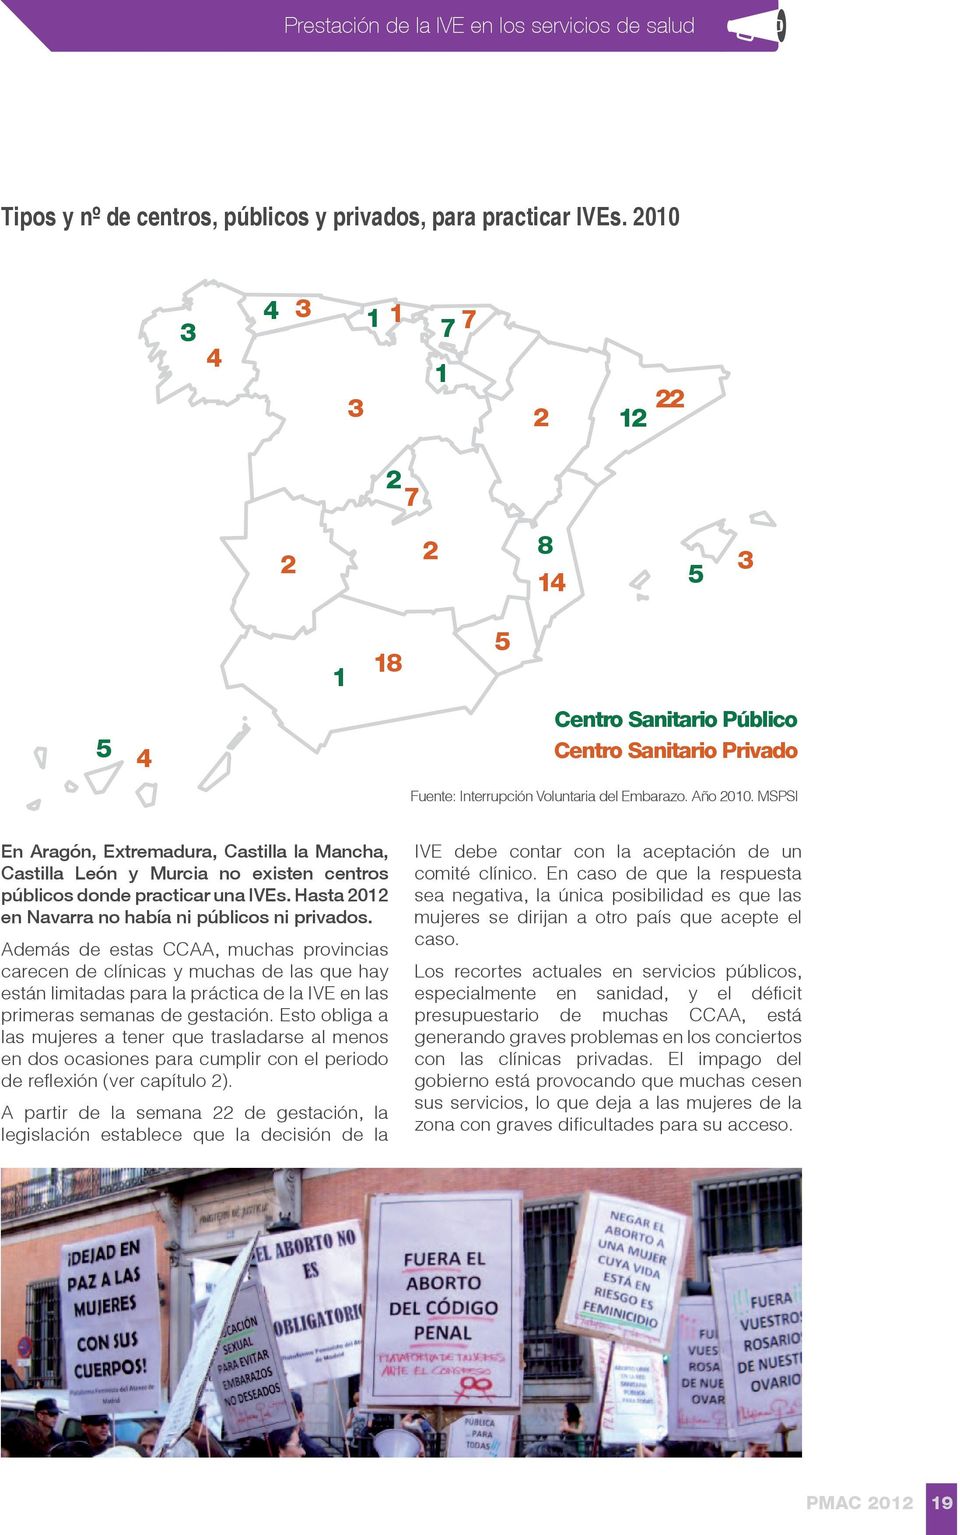 MSPSI En Aragón, Extremadura, Castilla la Mancha, Castilla León y Murcia no existen centros públicos donde practicar una IVEs. Hasta 2012 en Navarra no había ni públicos ni privados.